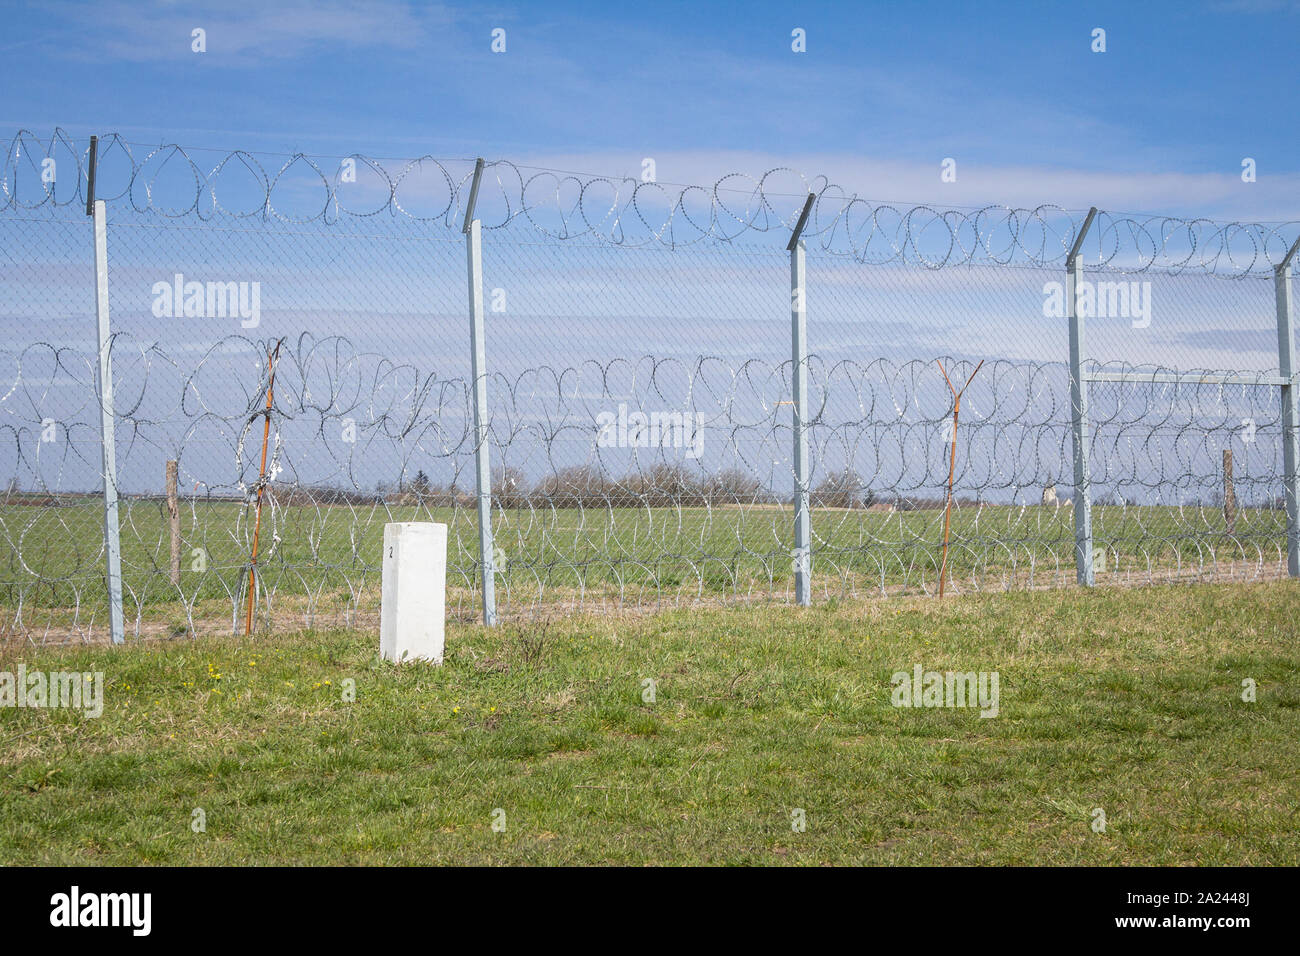 Grenzzaun zwischen Rastina (Serbien) & Bacsszentgyorgy (Ungarn). Diese Grenze wurde im Jahr 2015 gebaut, um die ankommenden Flüchtlinge & Migrantinnen während zu stoppen Stockfoto